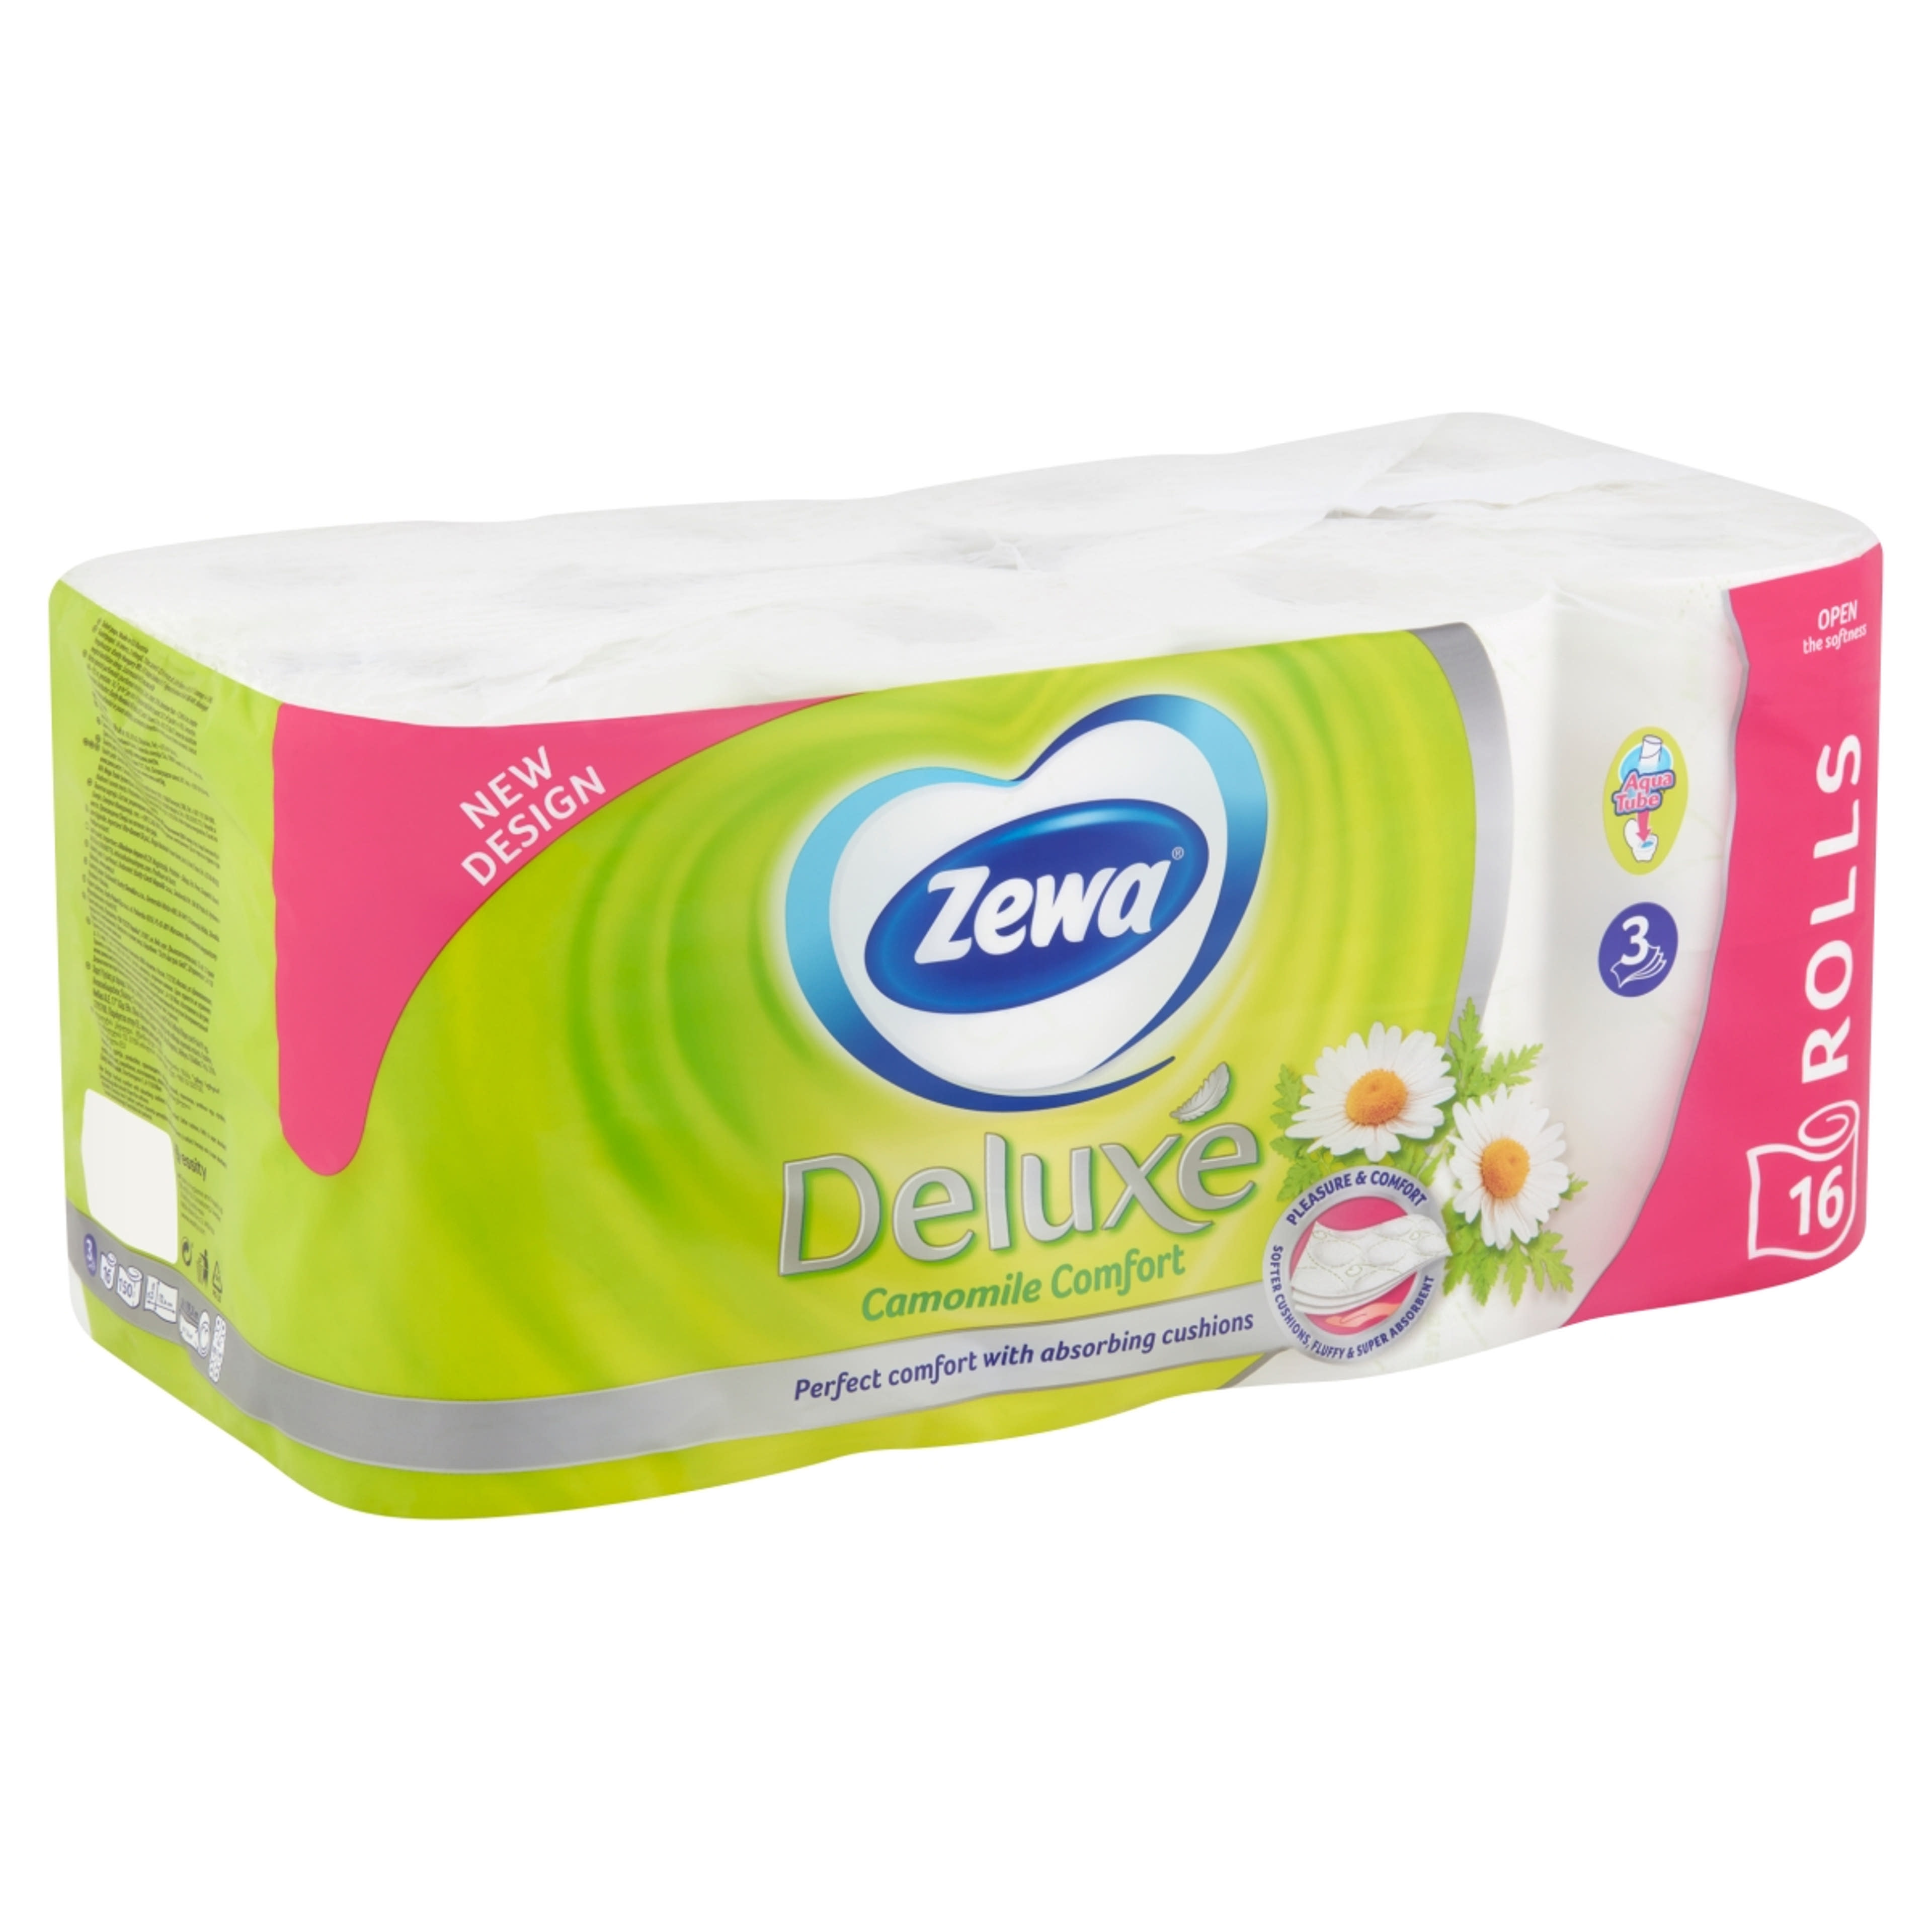 Zewa Deluxe Camomile Comfort 3 rétegű toalettpapír - 16 tekercs-2